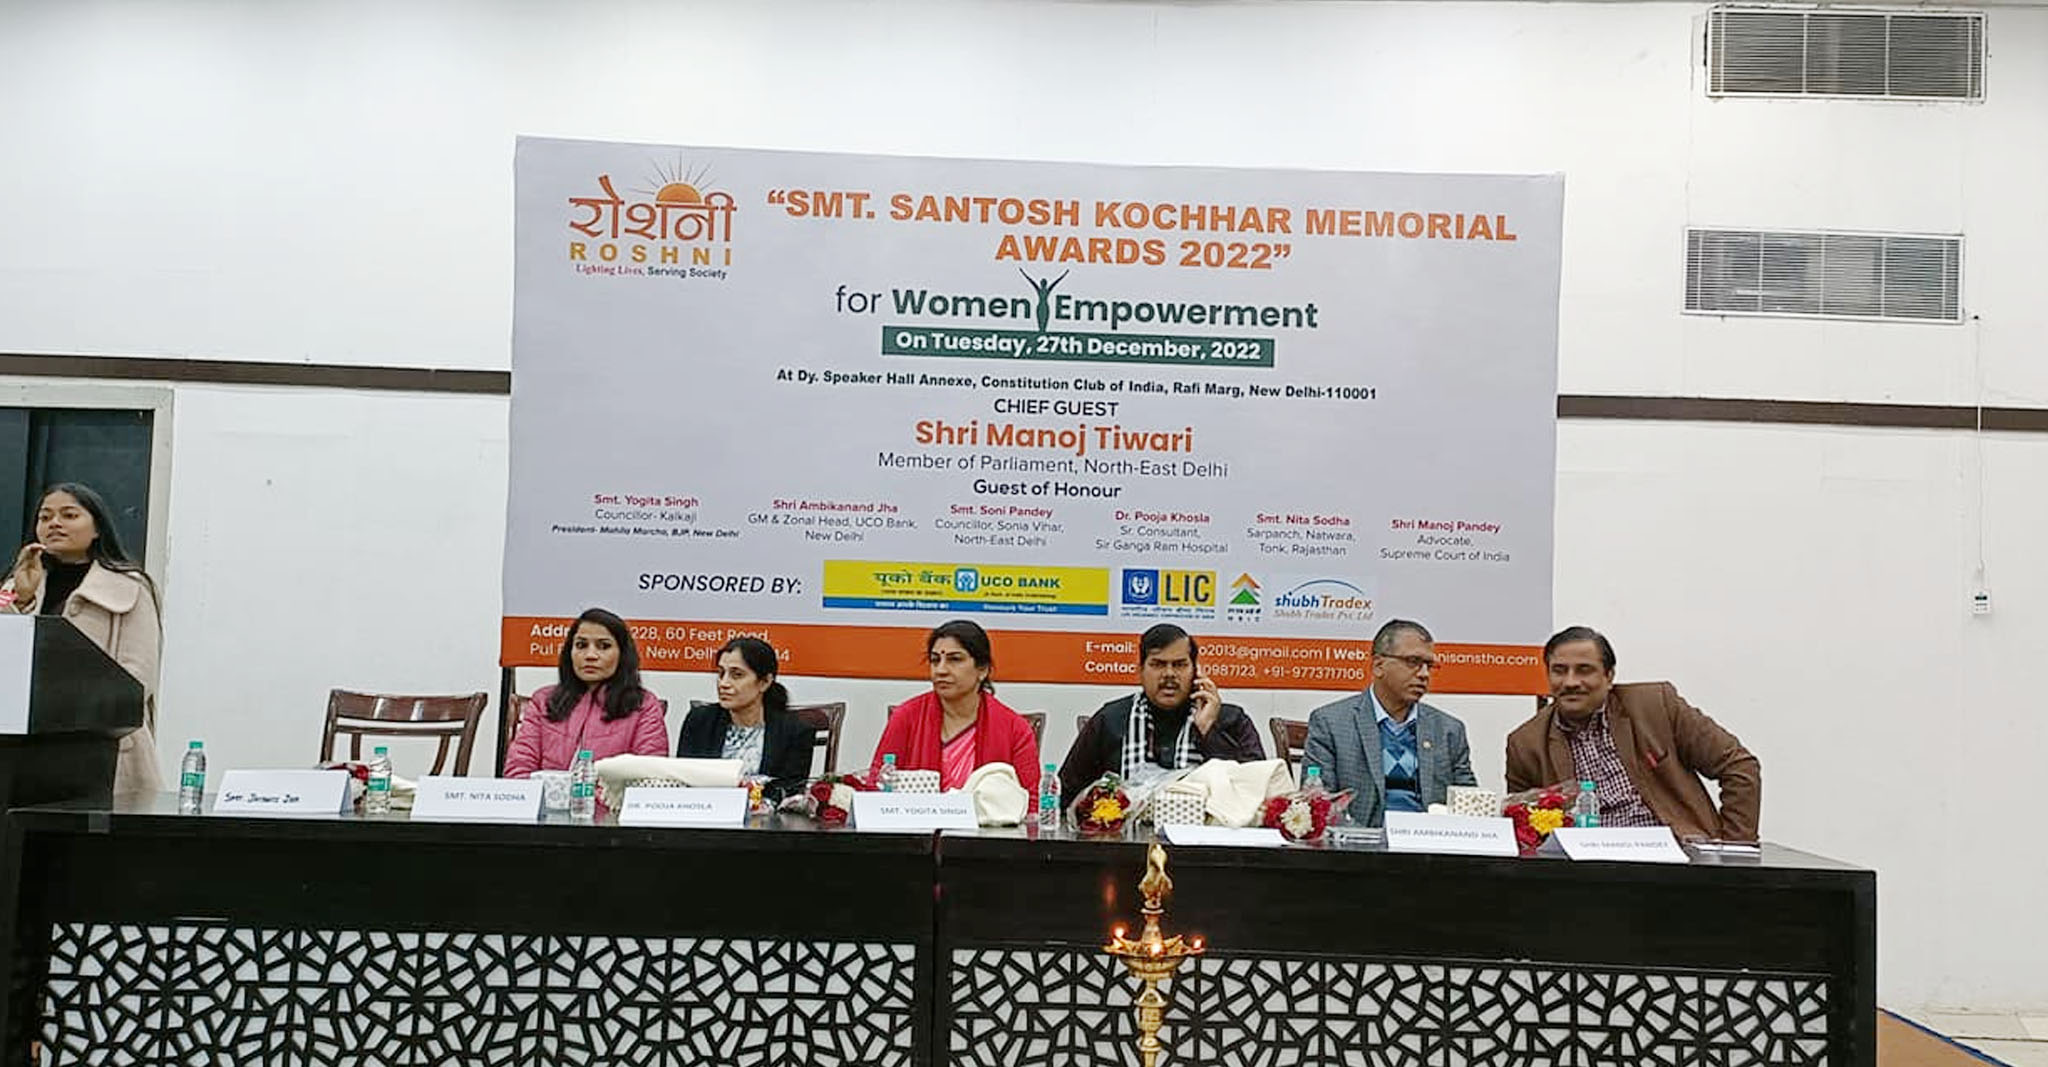 Smt. Santosh Kochhar Memorial Award for Women Empowerment